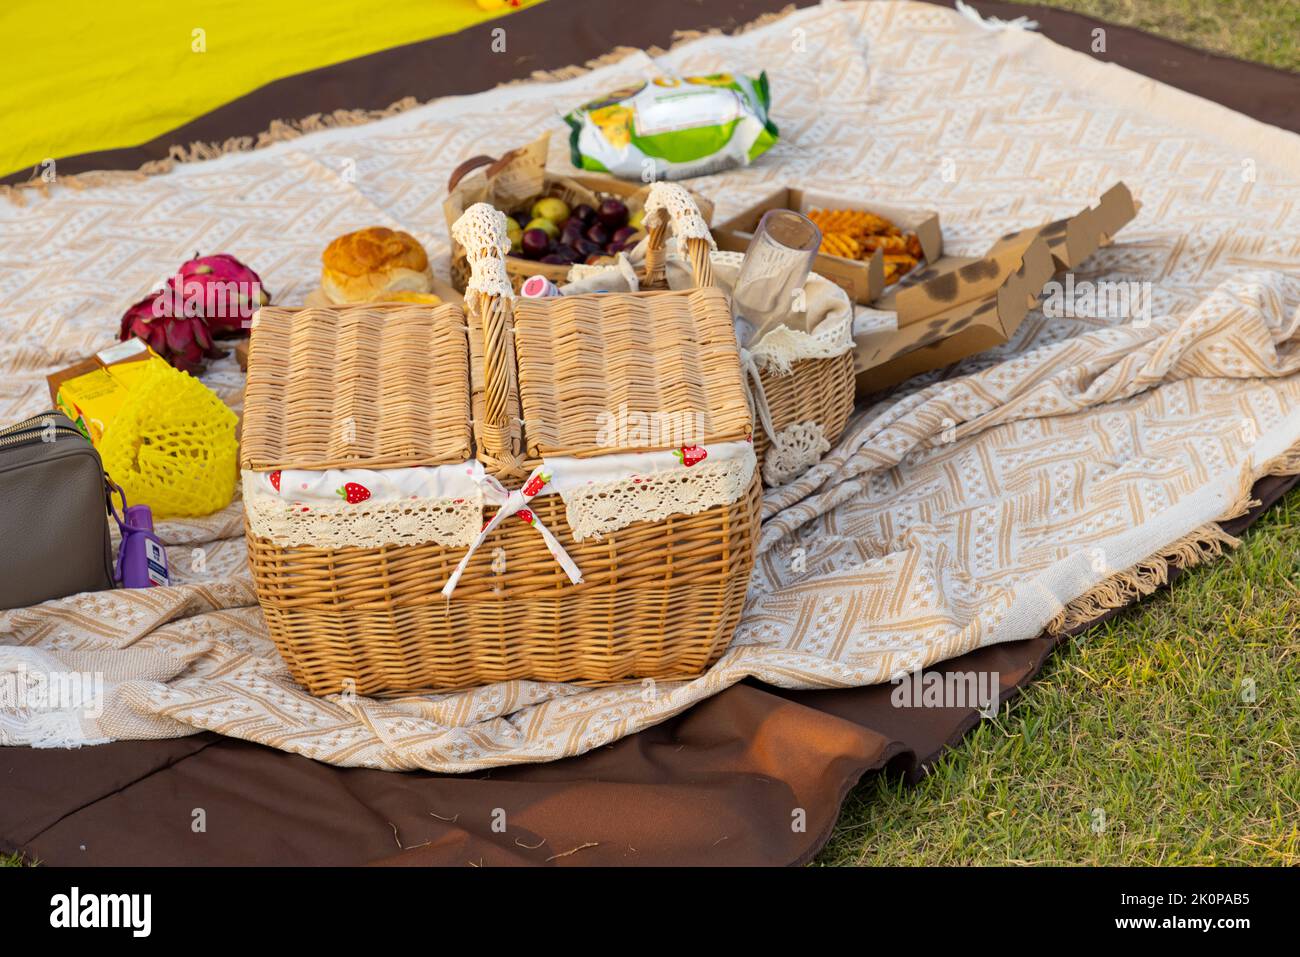 Picknickkorb mit Produkten und einer Flasche Wein, Kerzen, Obst auf karierter Decke im Garten, schönes romantisches Picknick im Frühlingspark Stockfoto